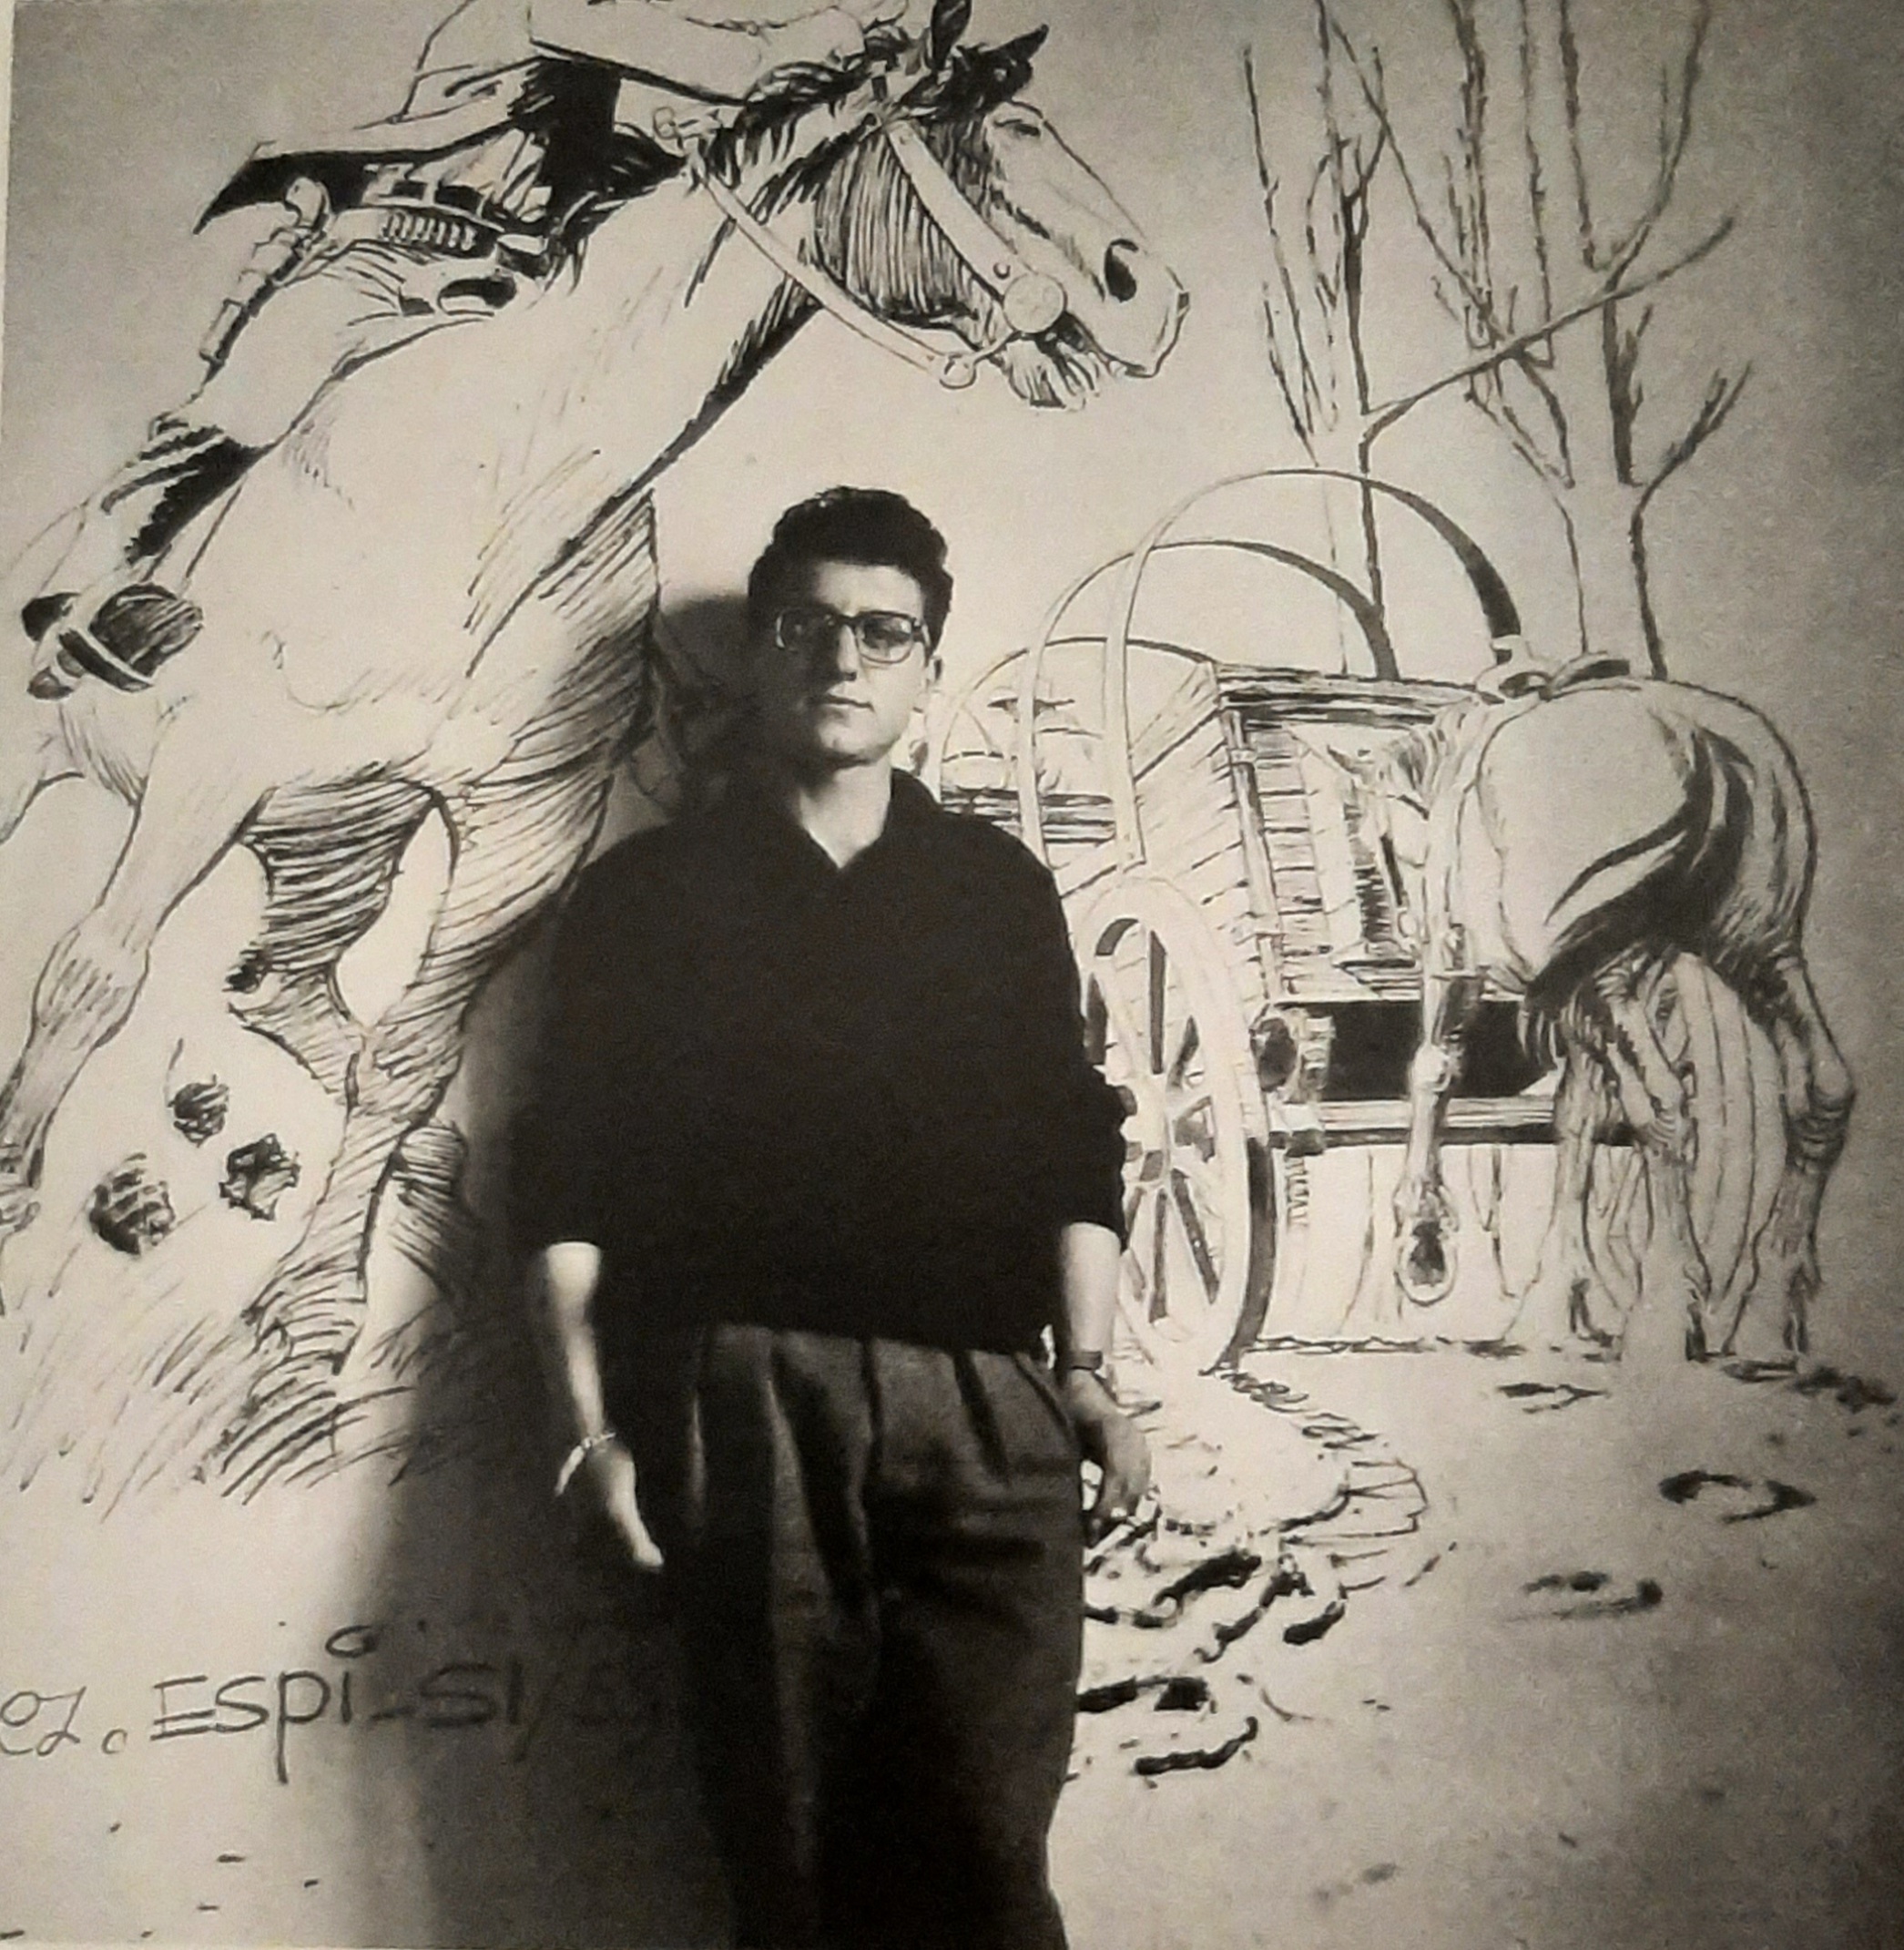 Rafael Lpez Esp en 1963, en la agencia Selecciones Ilustradas.